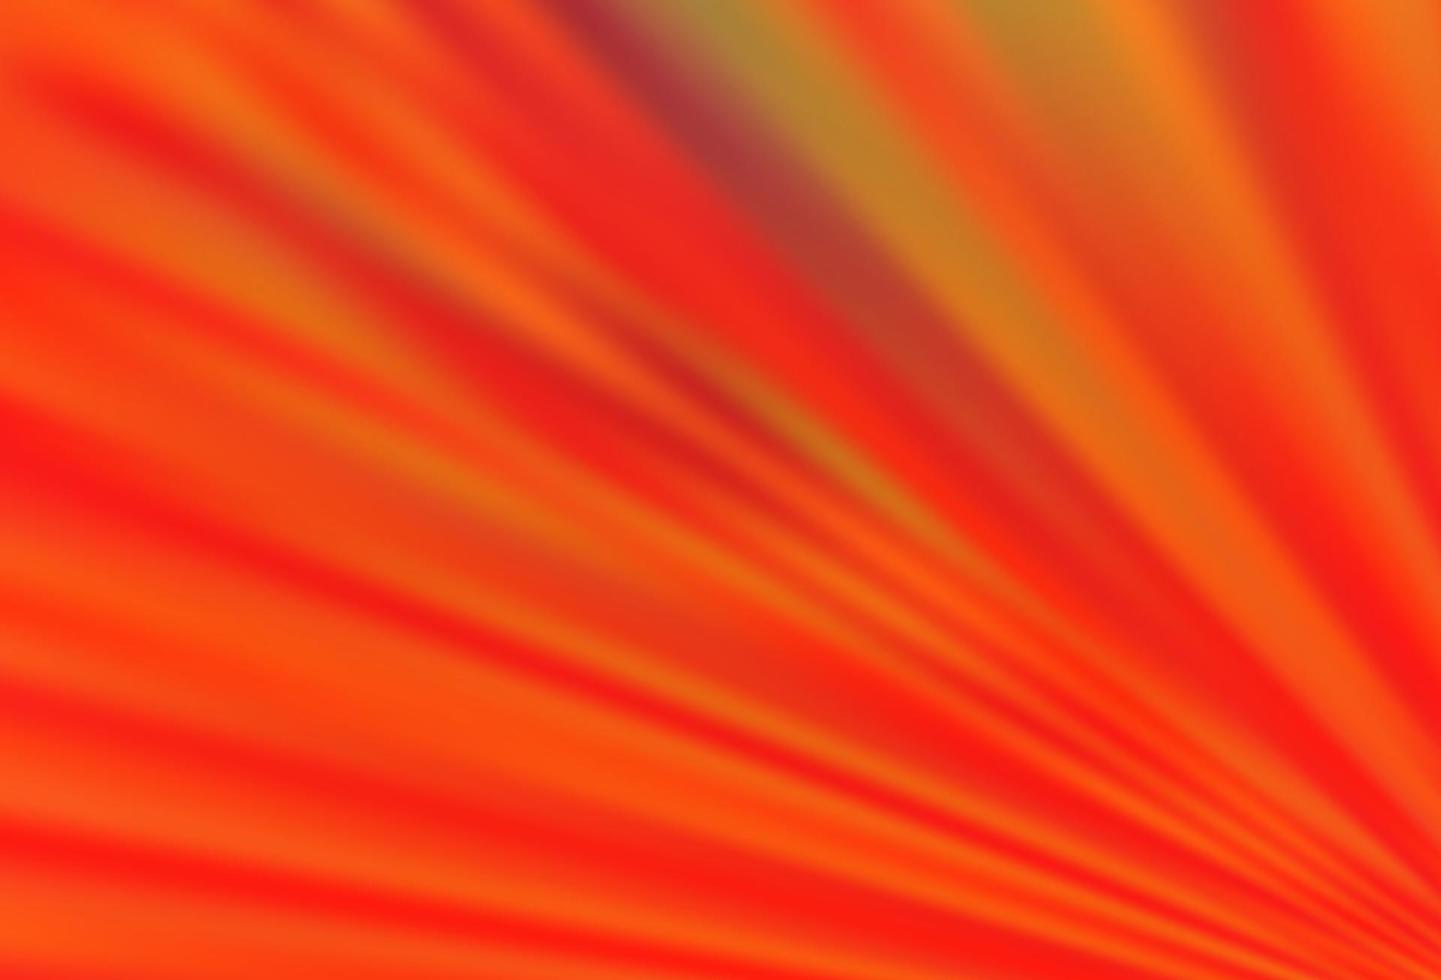 textura de vetor laranja claro com linhas coloridas.